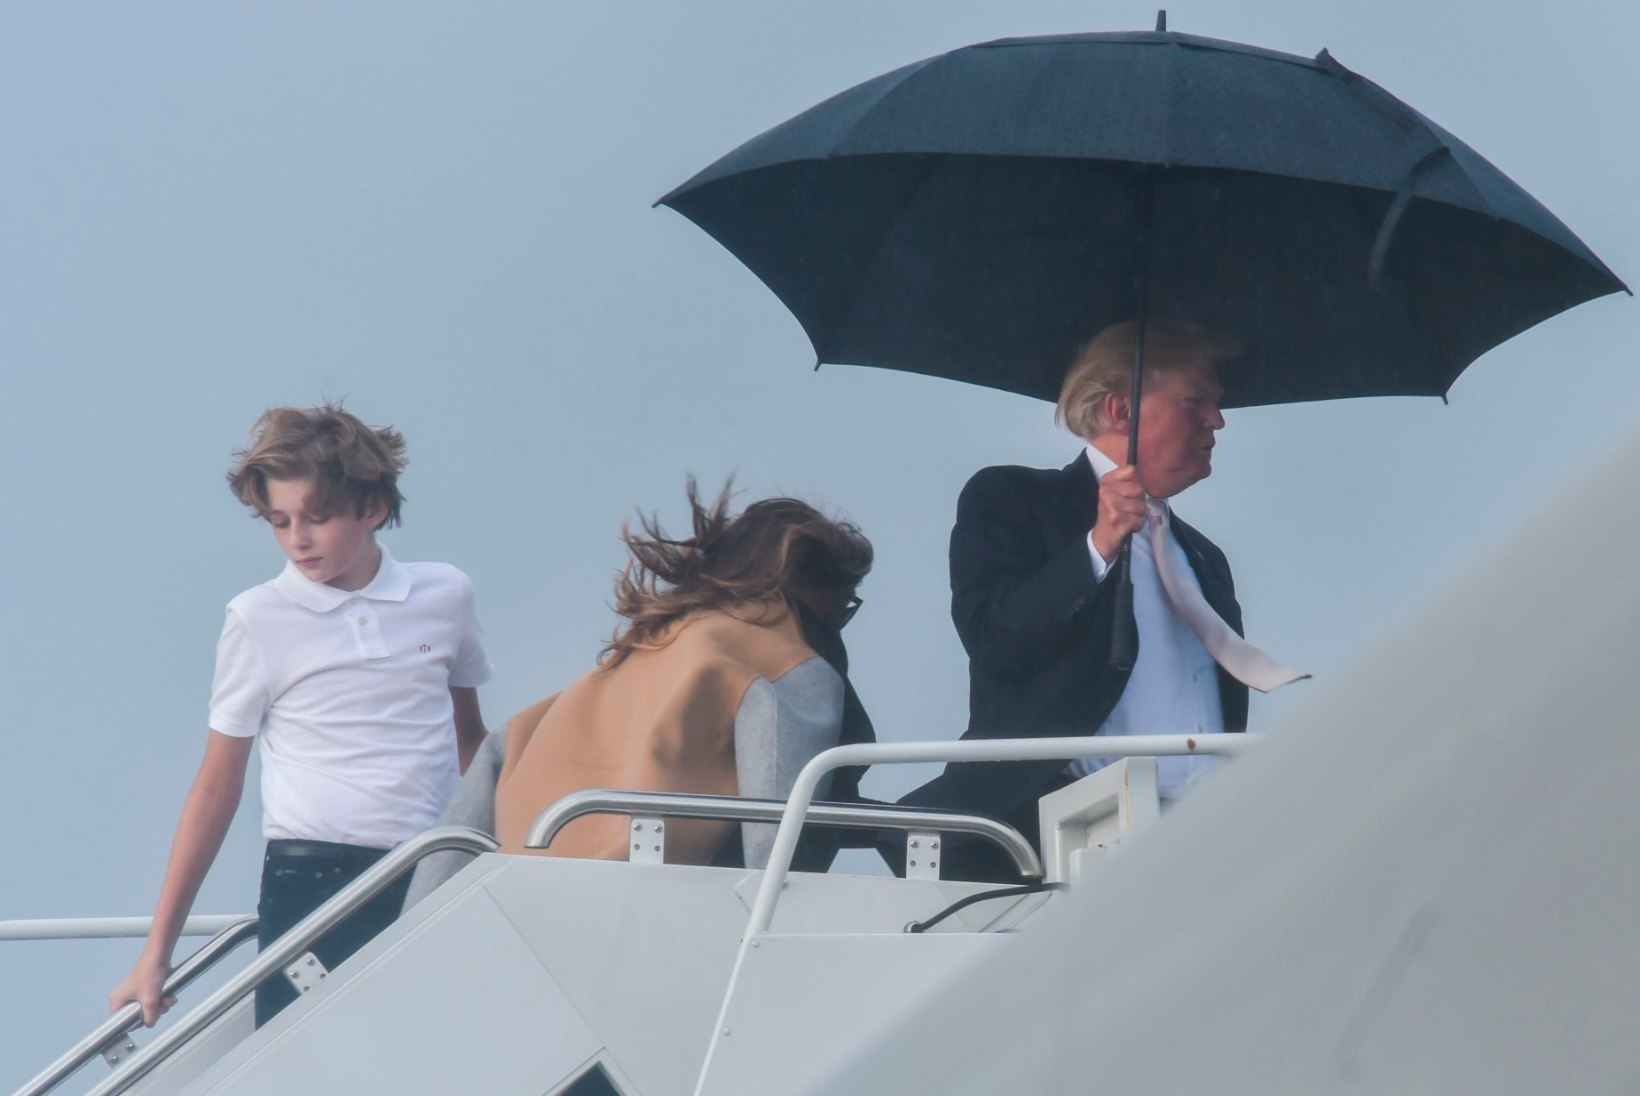 FOTOD | Trump hoiab enda kohal suurt vihmavarju, jättes naise ja poja saju kätte 